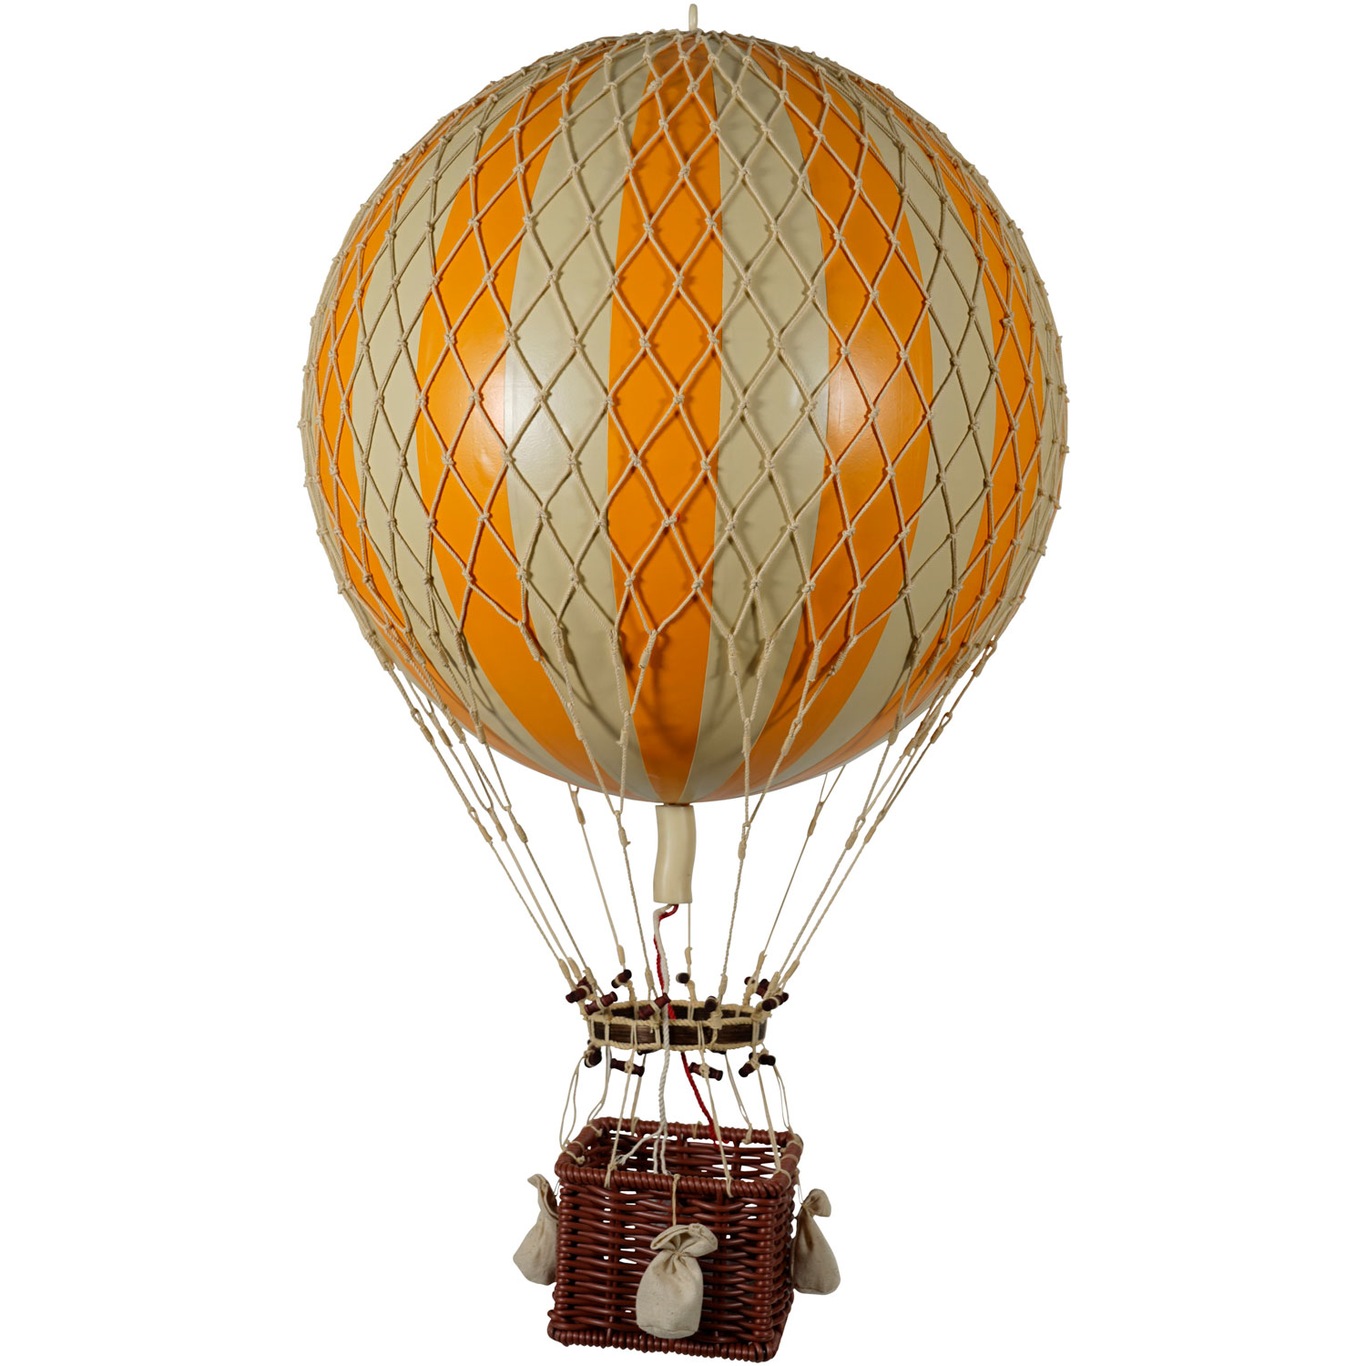 Royal Aero Air Balloon 32x56 cm, Orange / Ivory